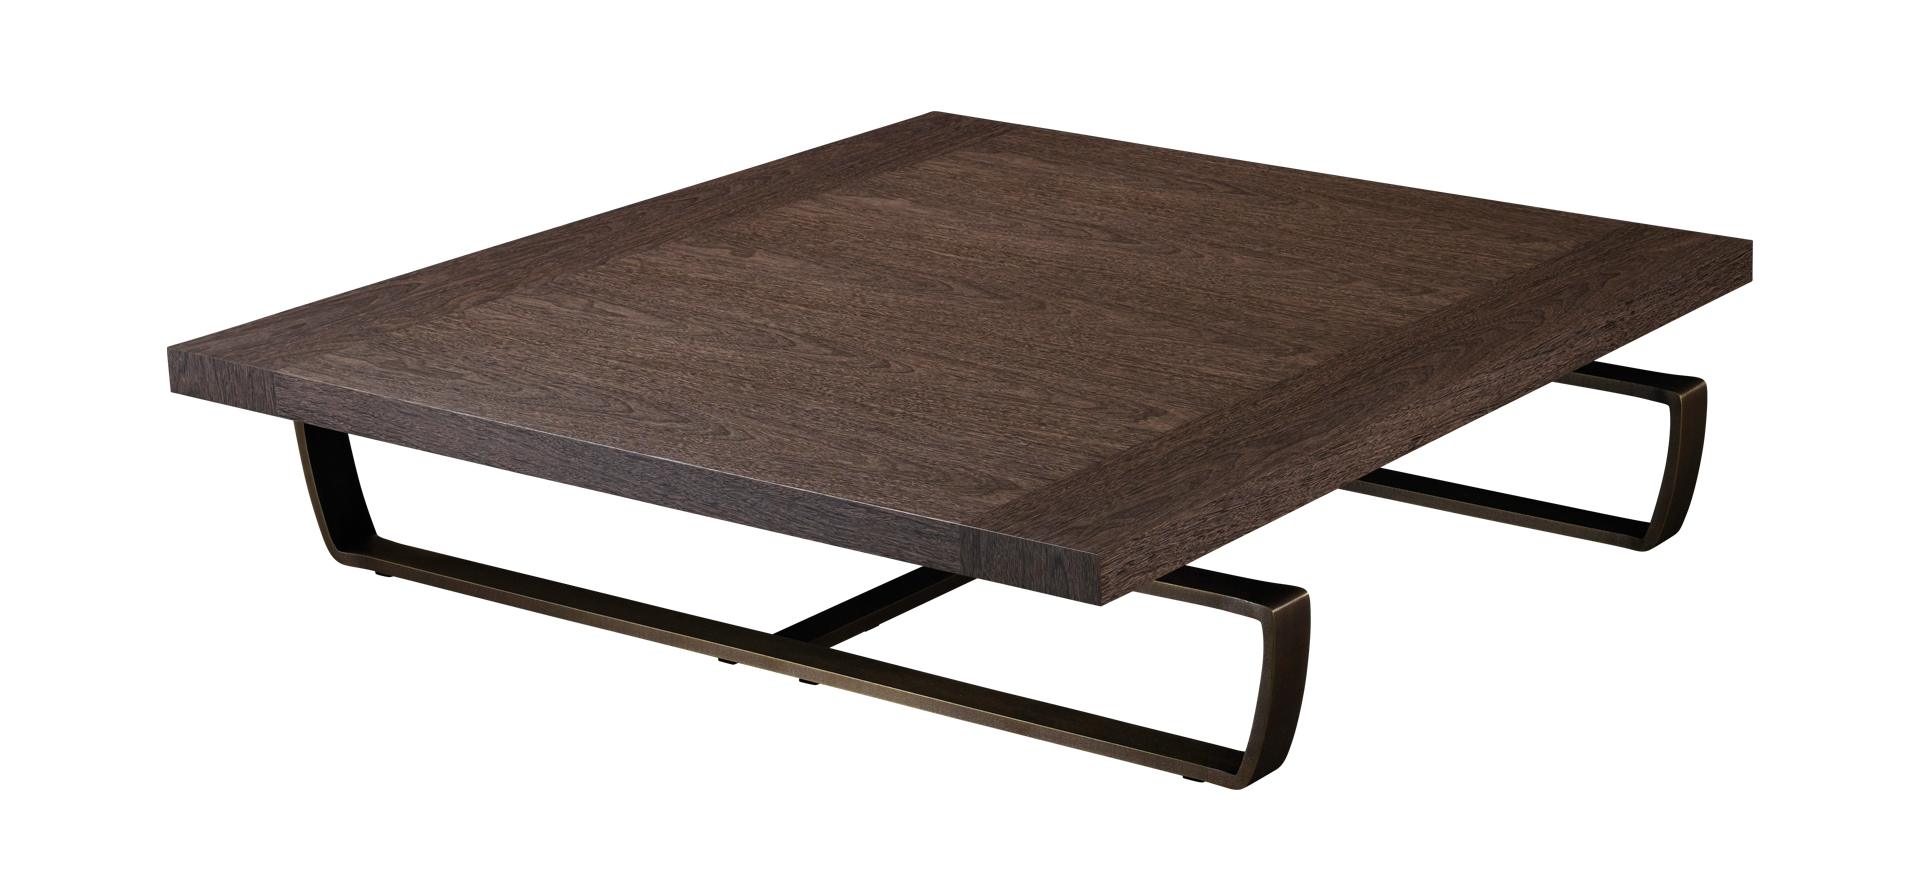 Saint Moritz est une table basse avec plateau en bois et piètement en bronze. Ce meuble figure dans le catalogue Promemoria | Promemoria